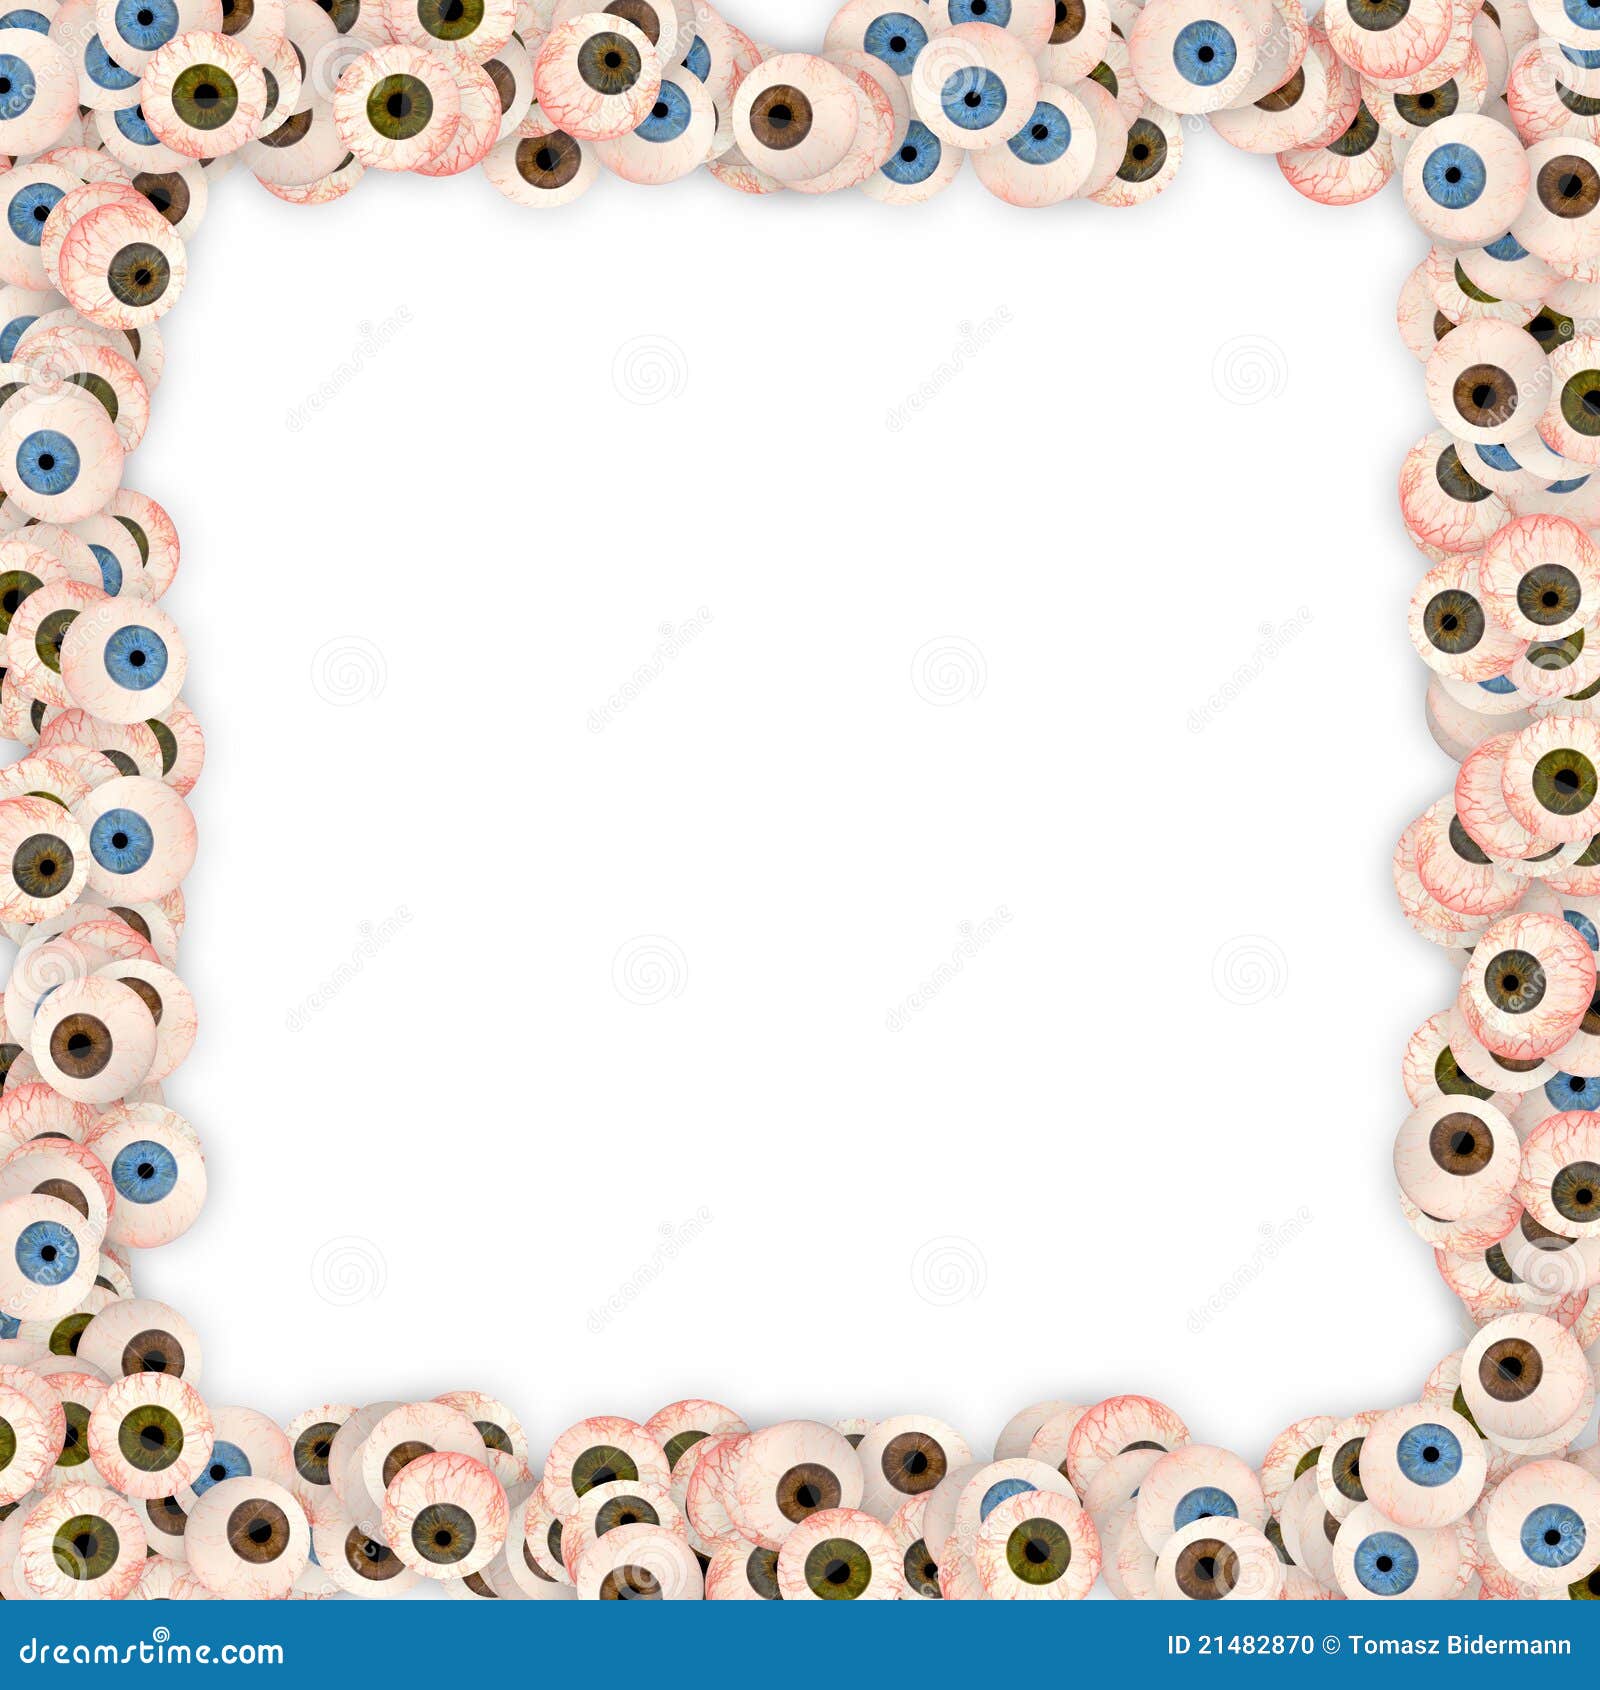 eyeball frame 21482870